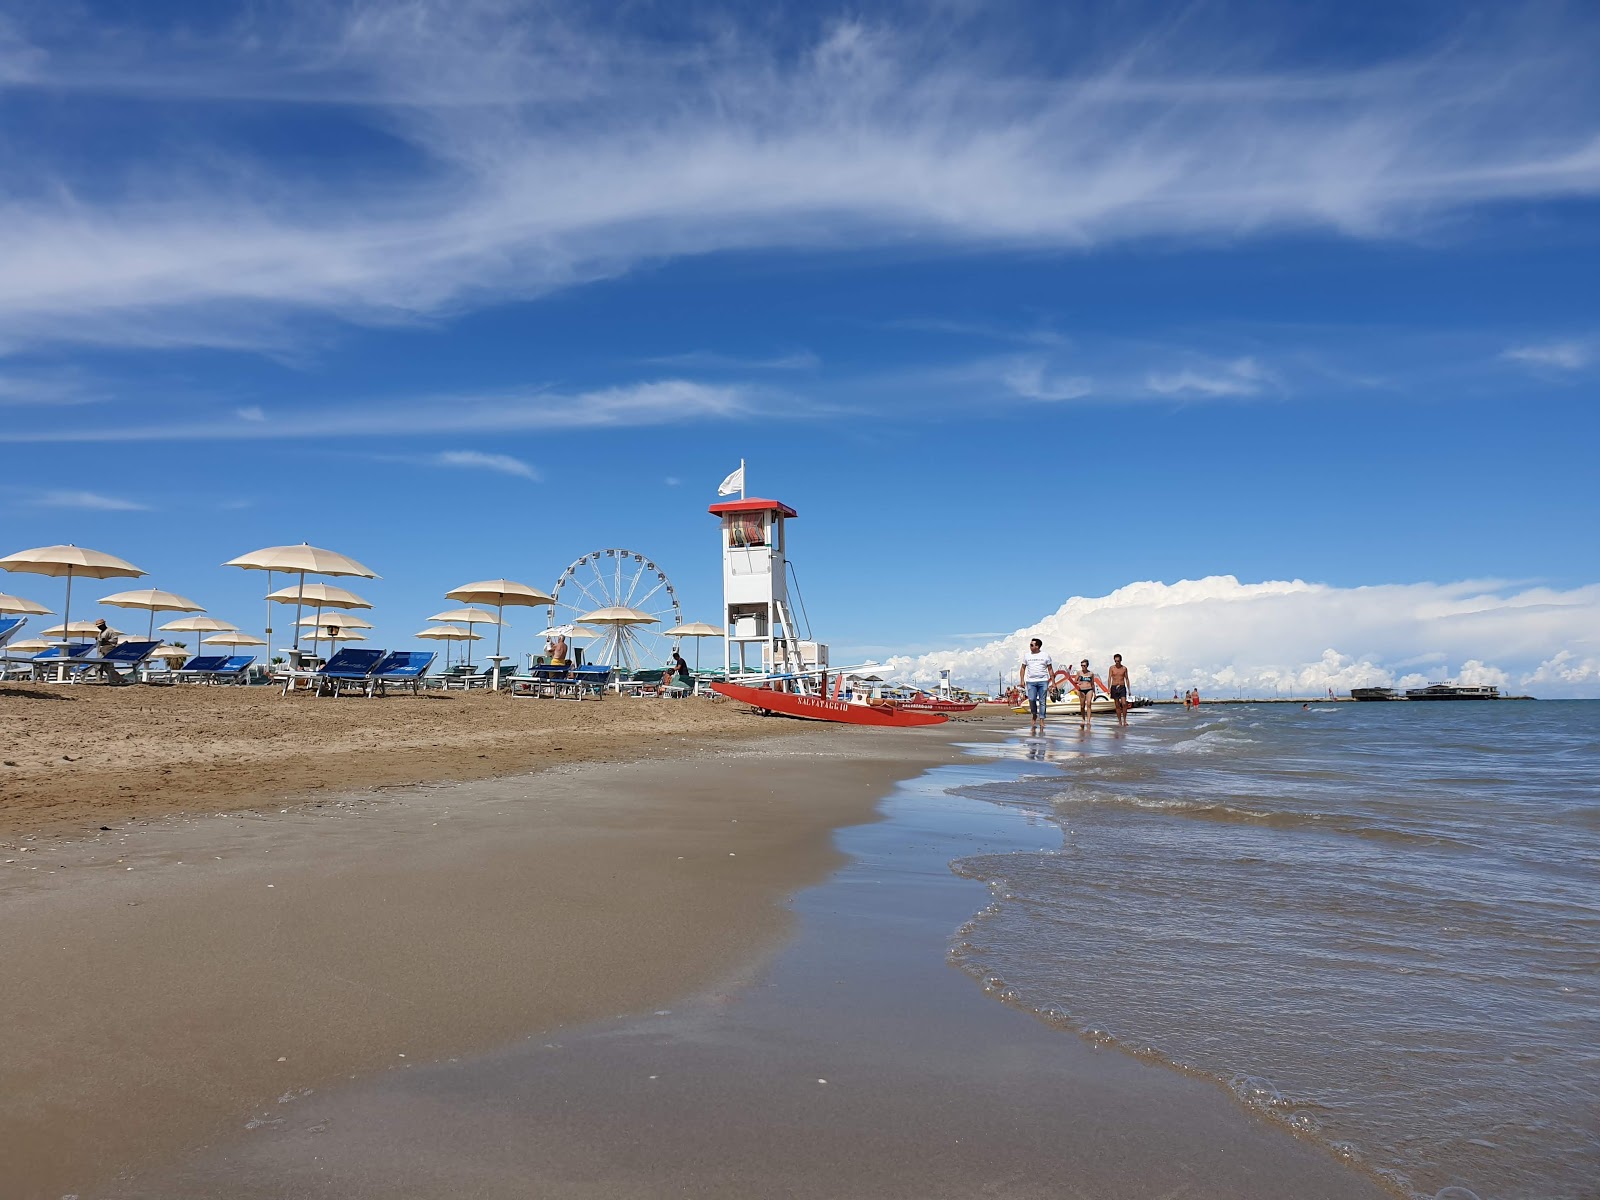 Rimini beach'in fotoğrafı parlak ince kum yüzey ile